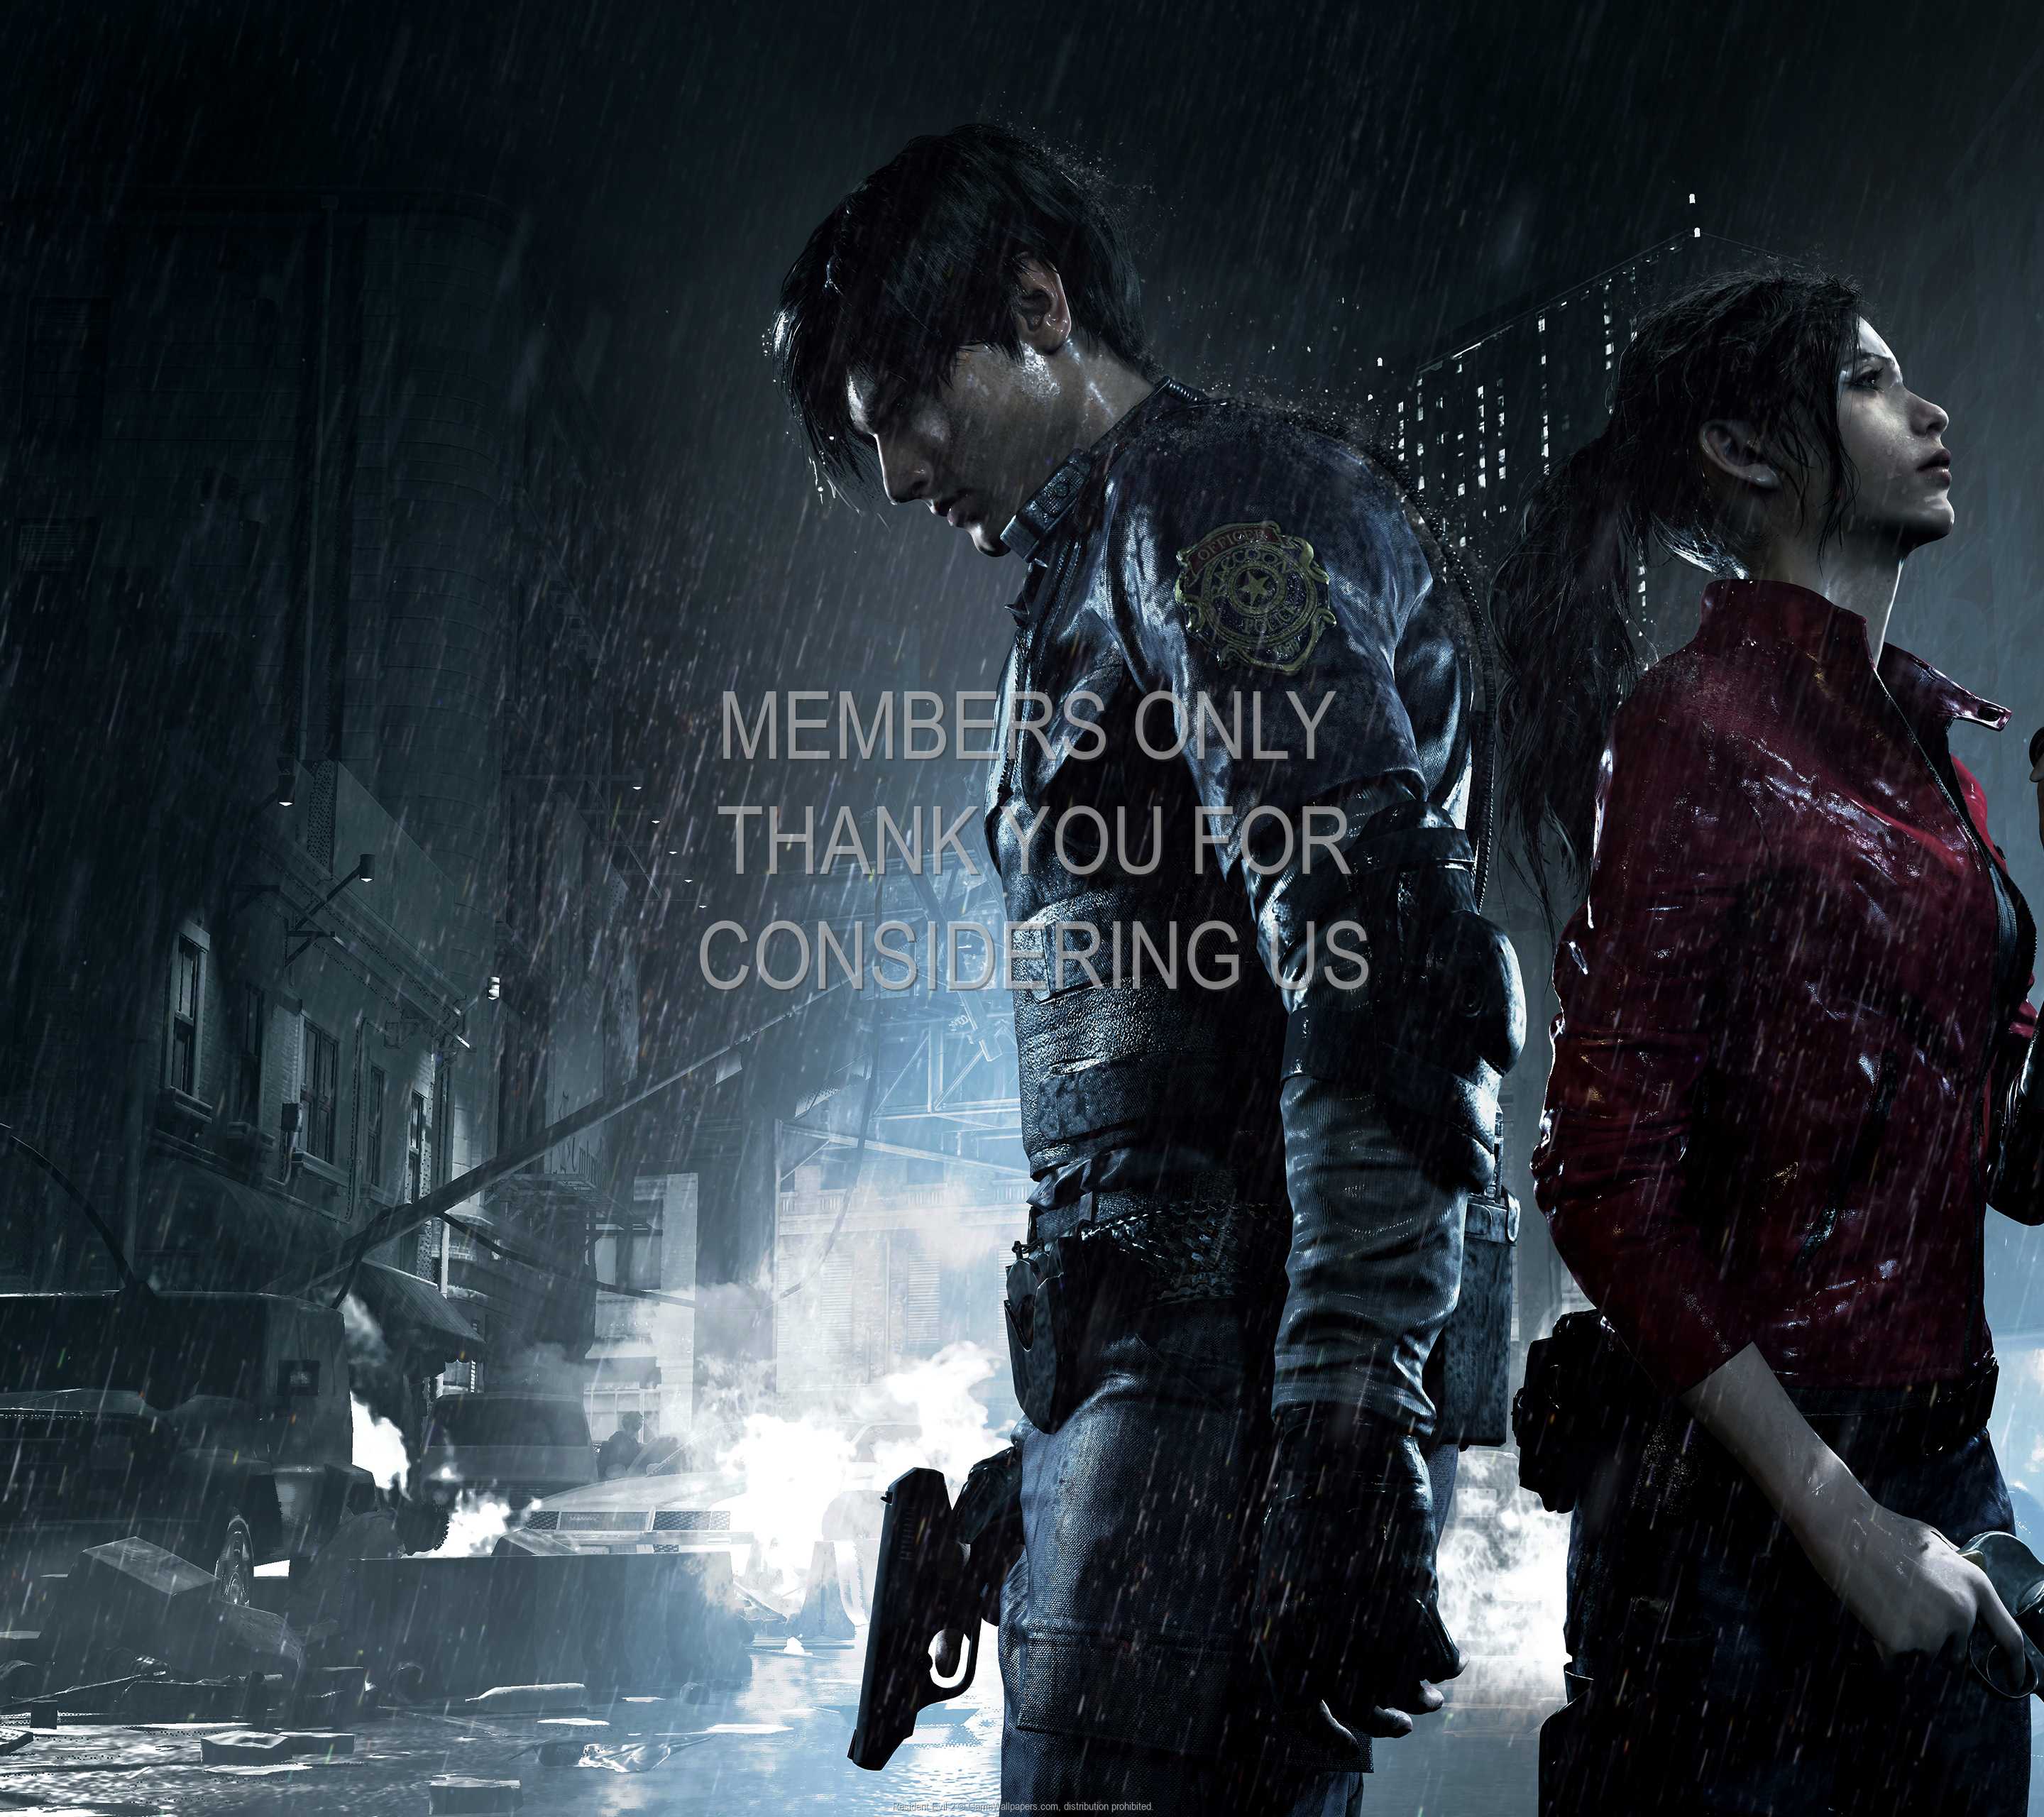 Resident Evil 2 1440p Horizontal Mobile wallpaper or background 01